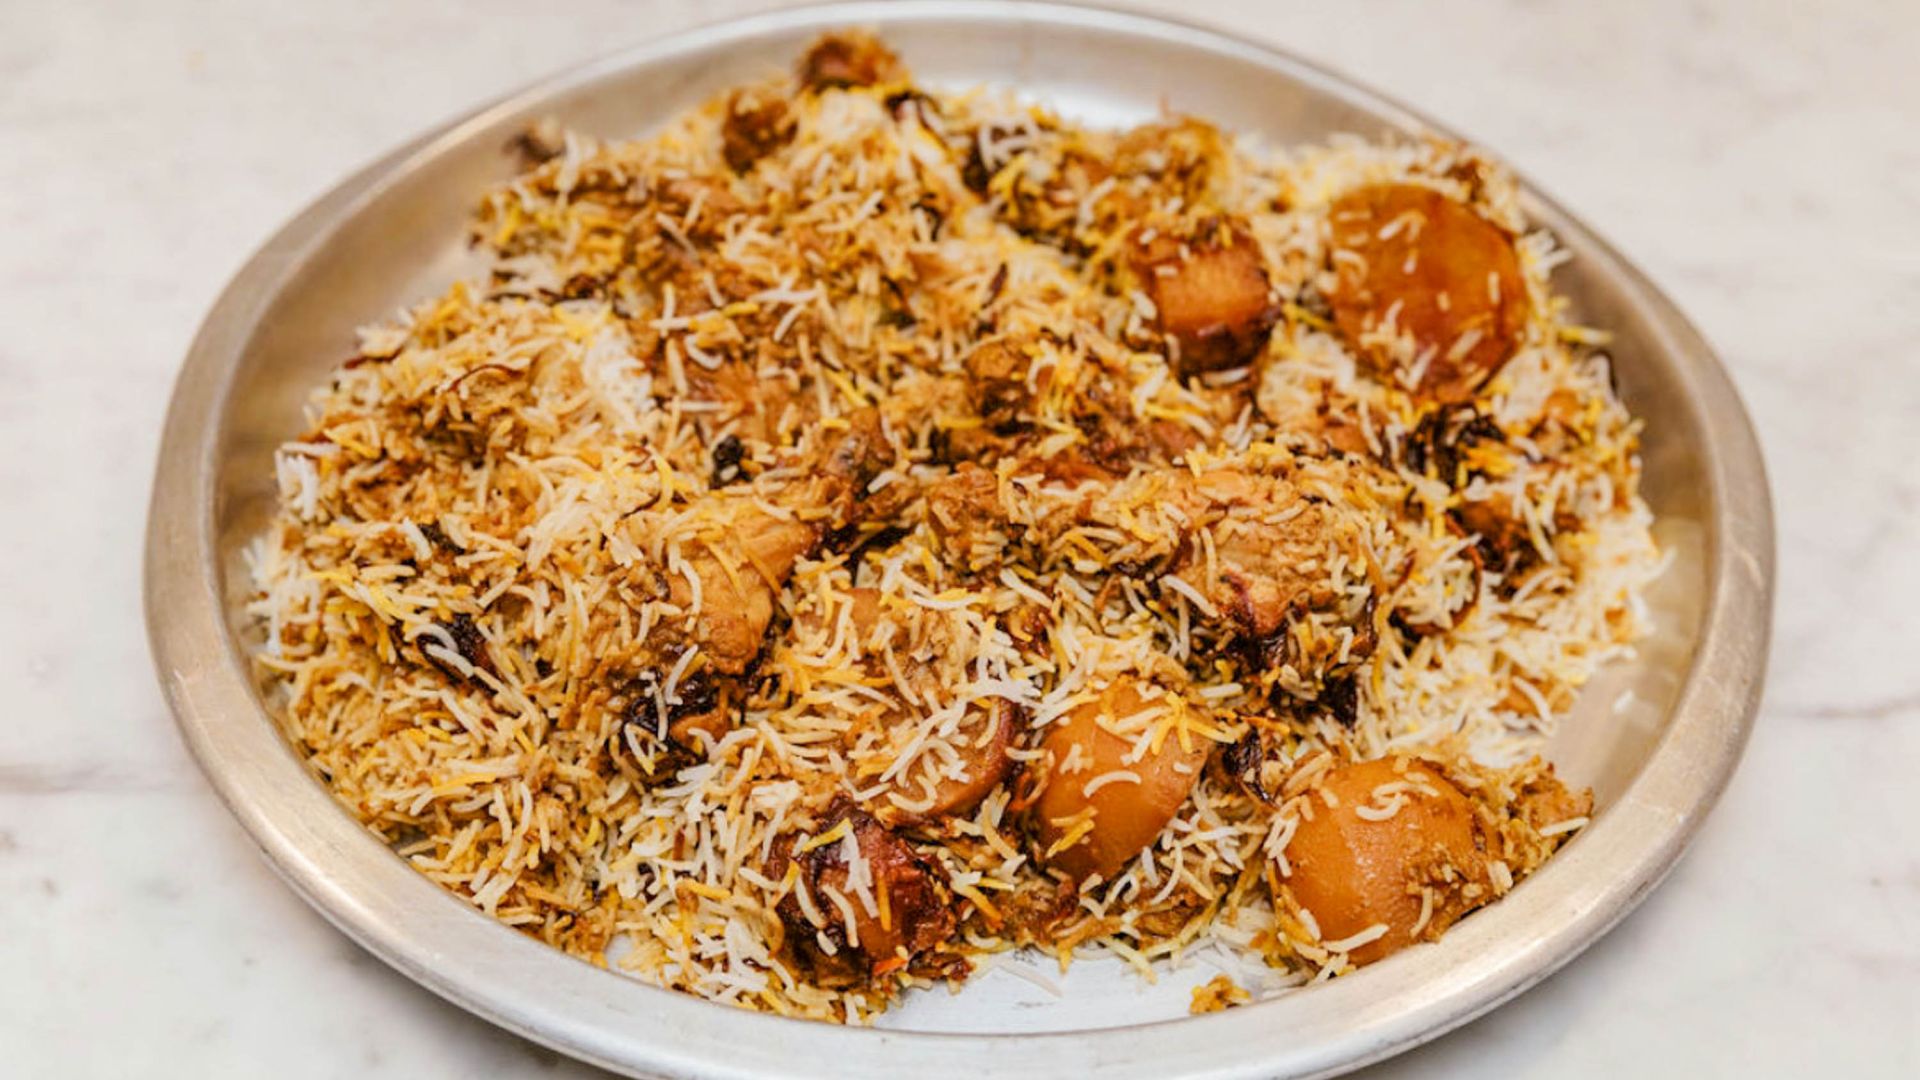 Chicken zorbiyan served on a plate